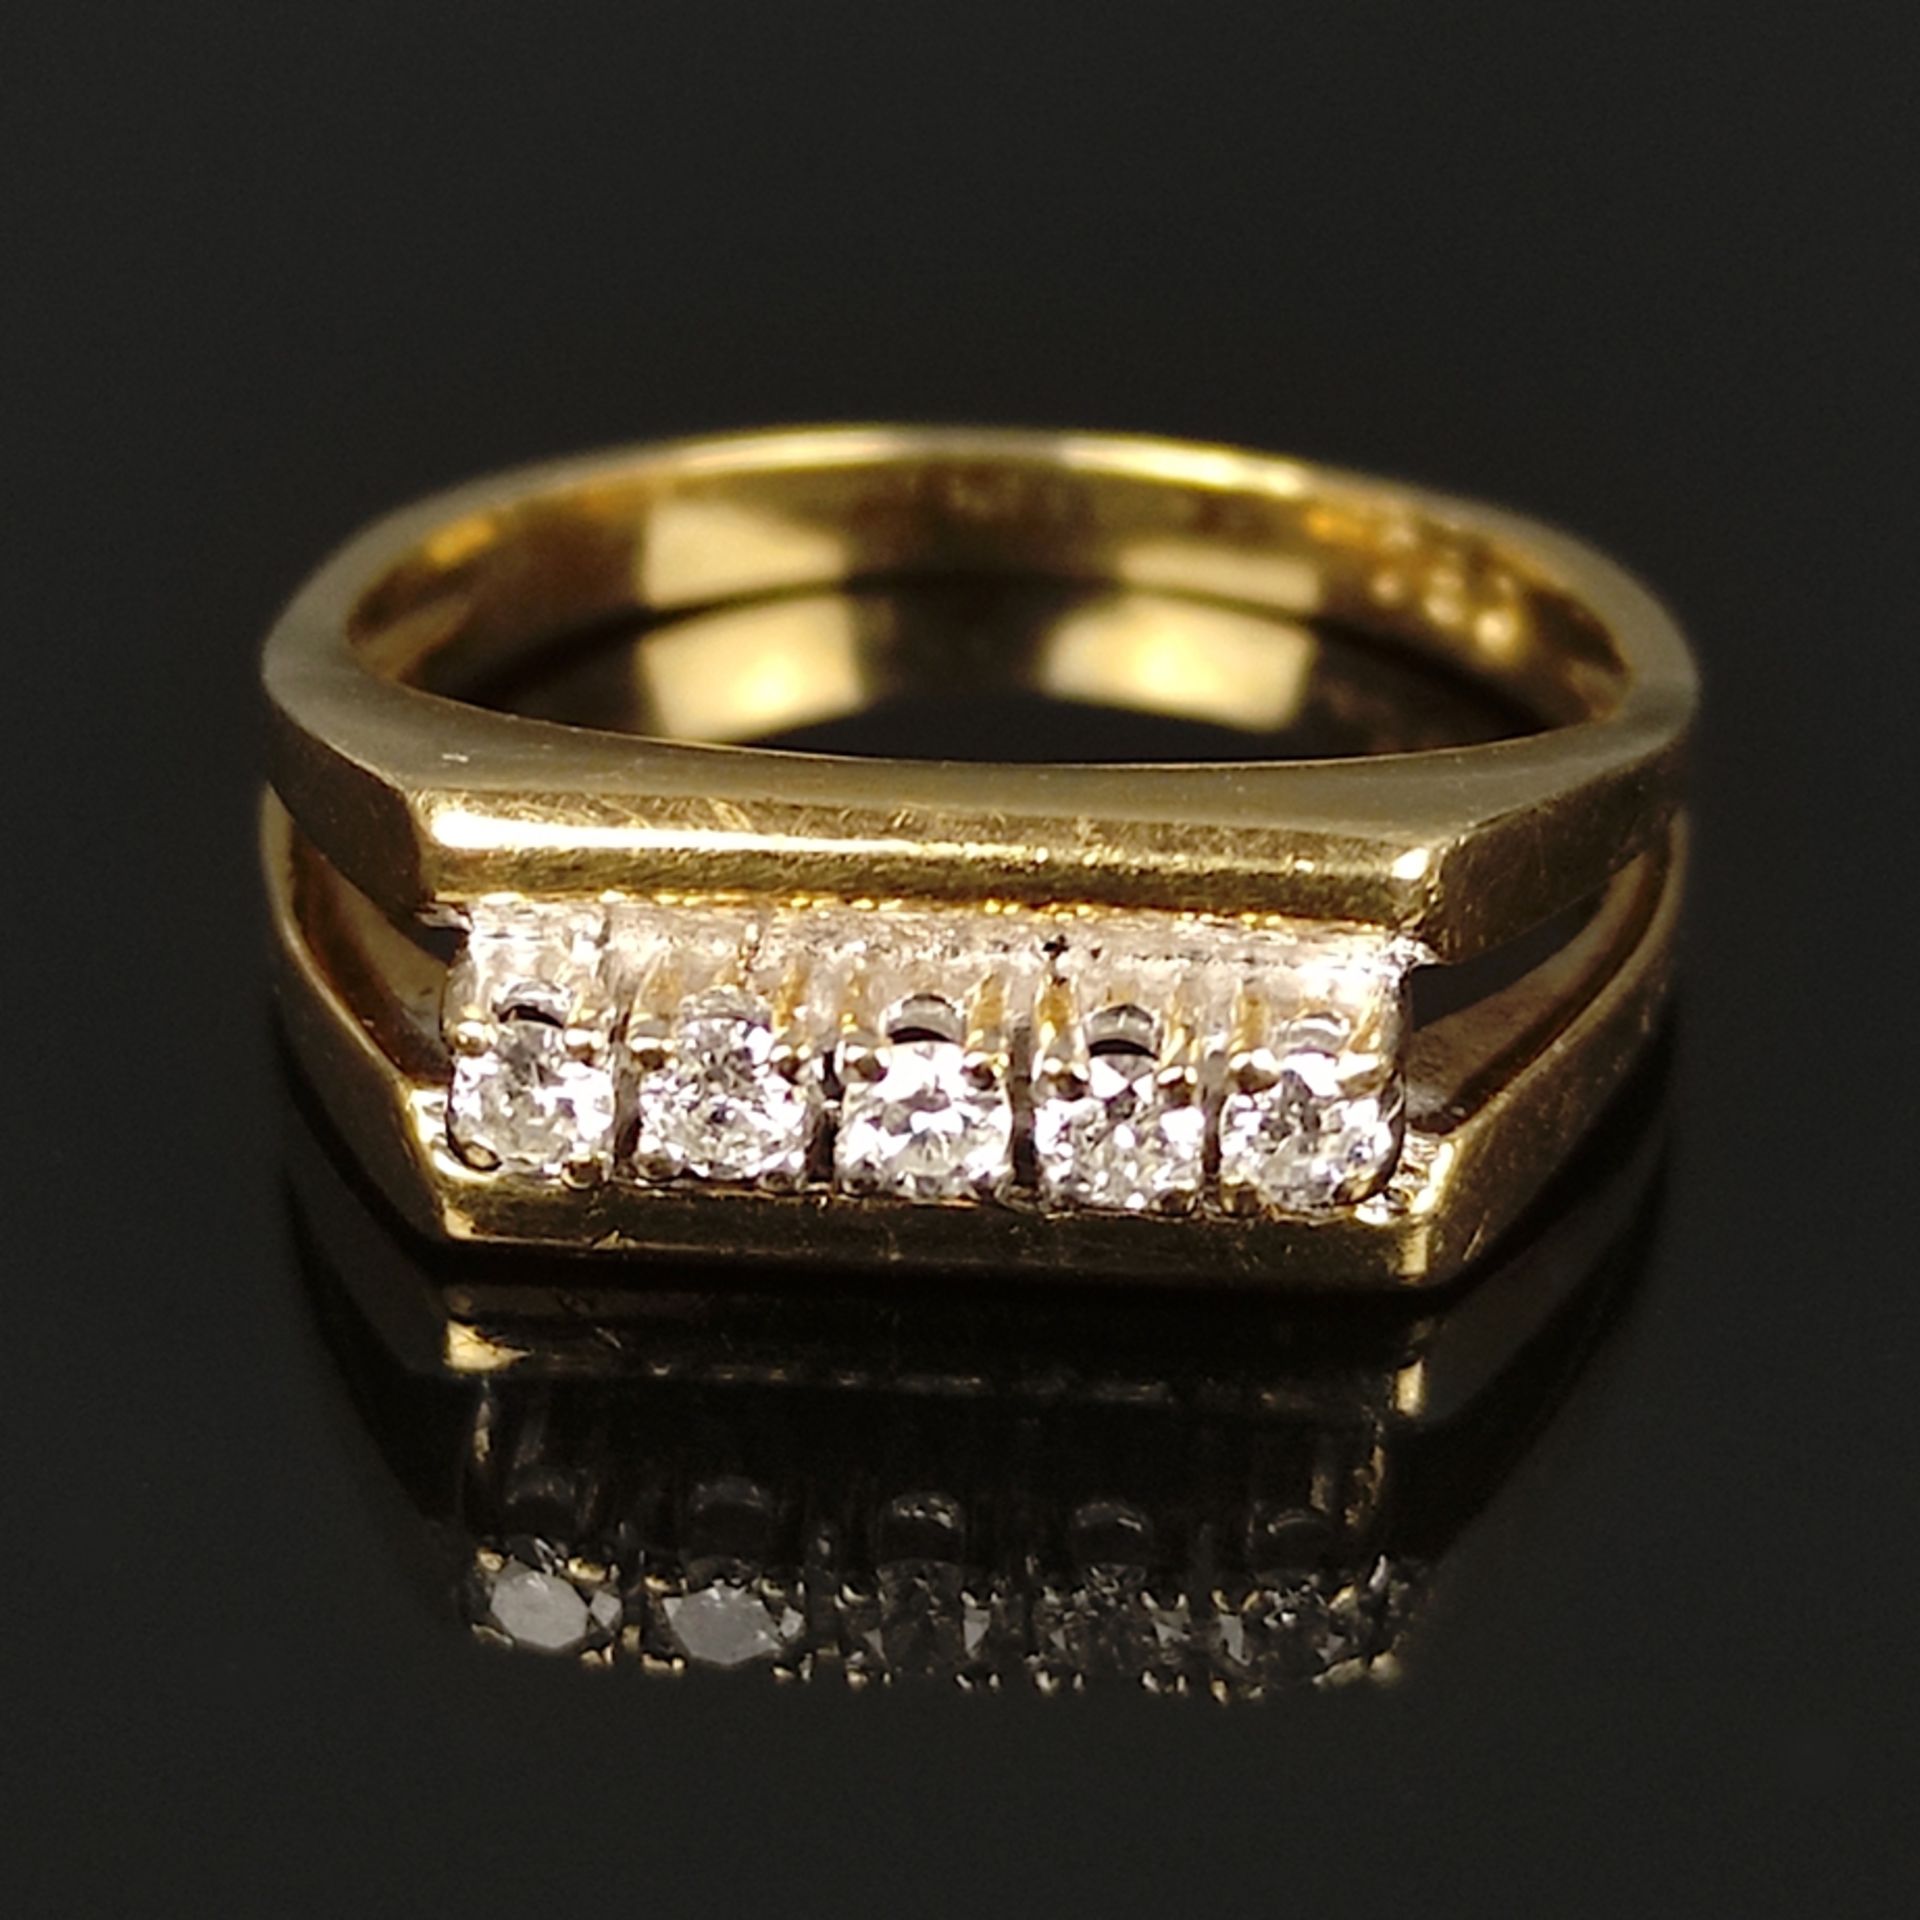 Diamantring, 750/18K Weiß-/Gelbgold, 3,55g, mittig in Reihe besetzt mit 5 Diamanten, Ringgröße 48 - Bild 2 aus 3